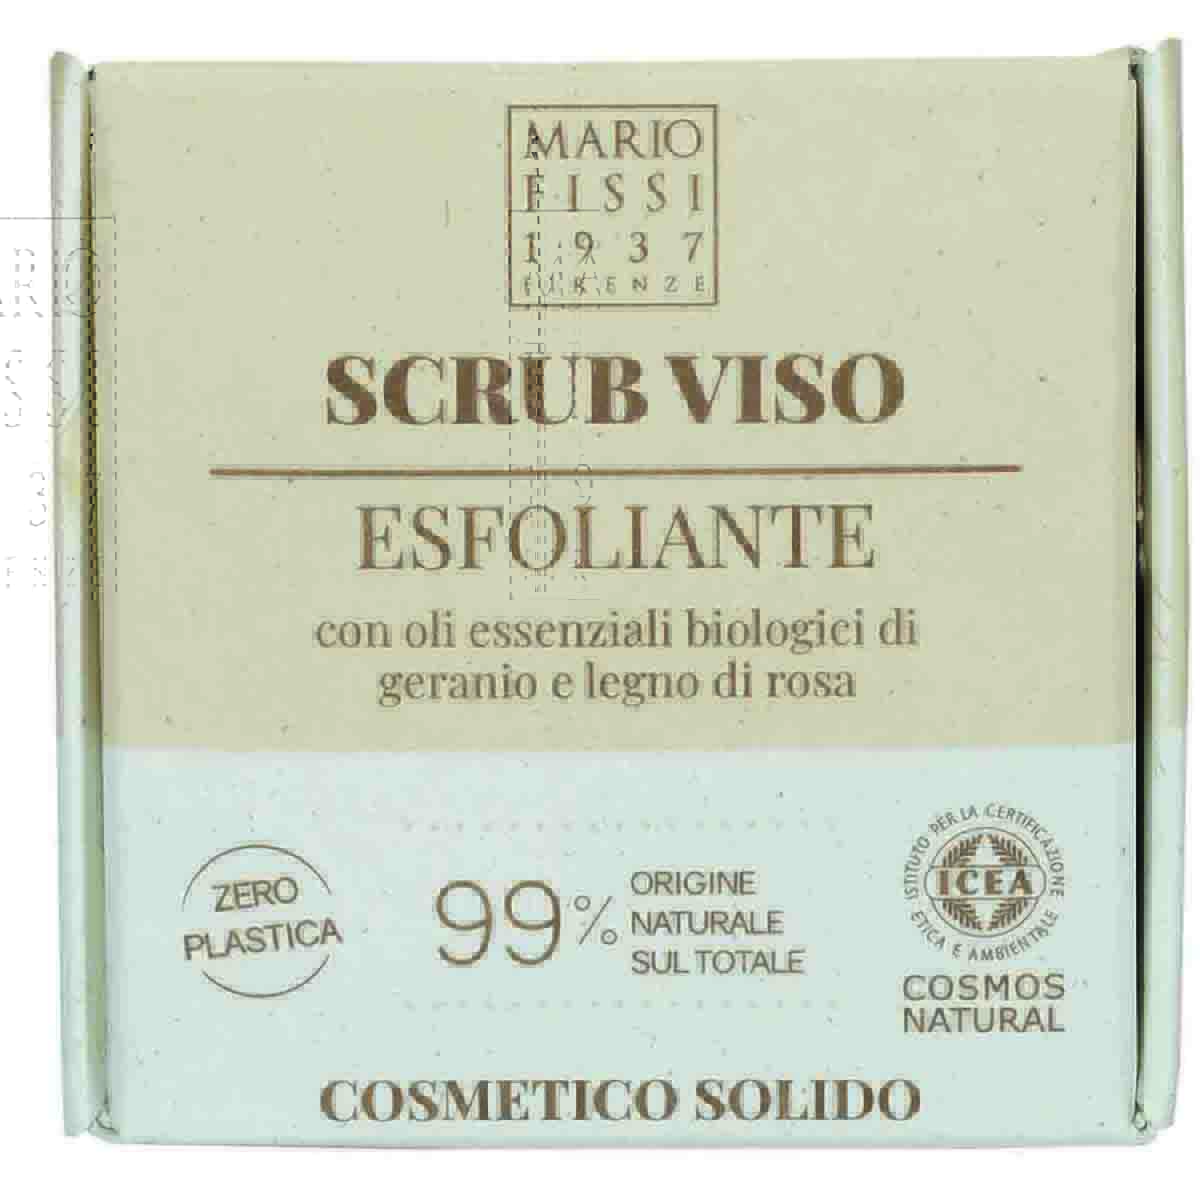 Мыло-скраб для лица твердое Mario Fissi 1937 Square Пилинг для лица шампунь mario fissi 1937 funzioniale очищающий с маслом чайного дерева